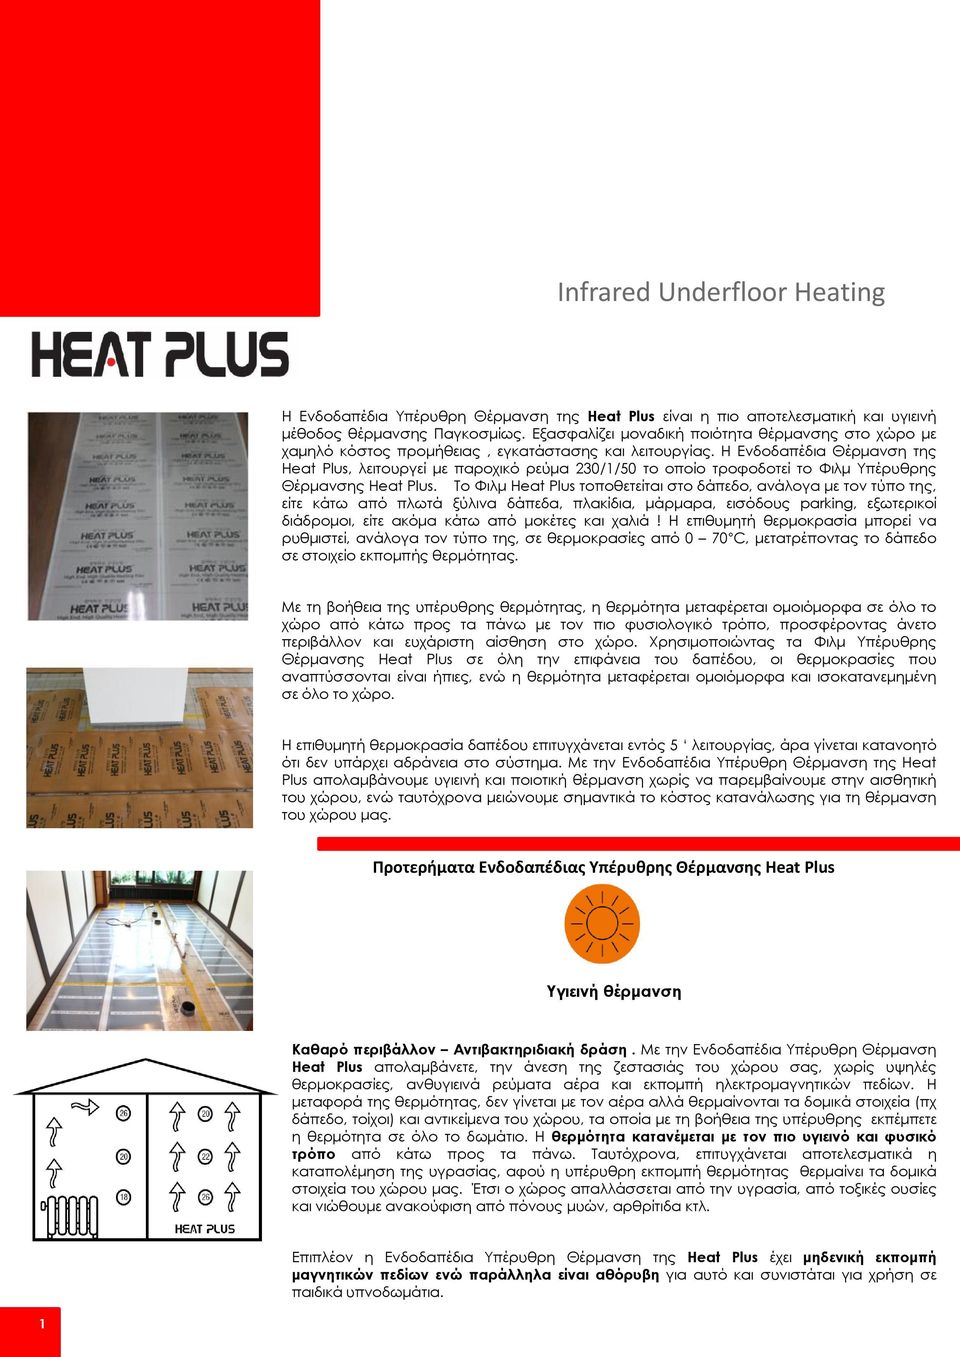 Η Ενδοδαπέδια Θέρμανση της Heat Plus, λειτουργεί με παροχικό ρεύμα 230/1/50 το οποίο τροφοδοτεί το Φιλμ Υπέρυθρης Θέρμανσης Heat Plus.